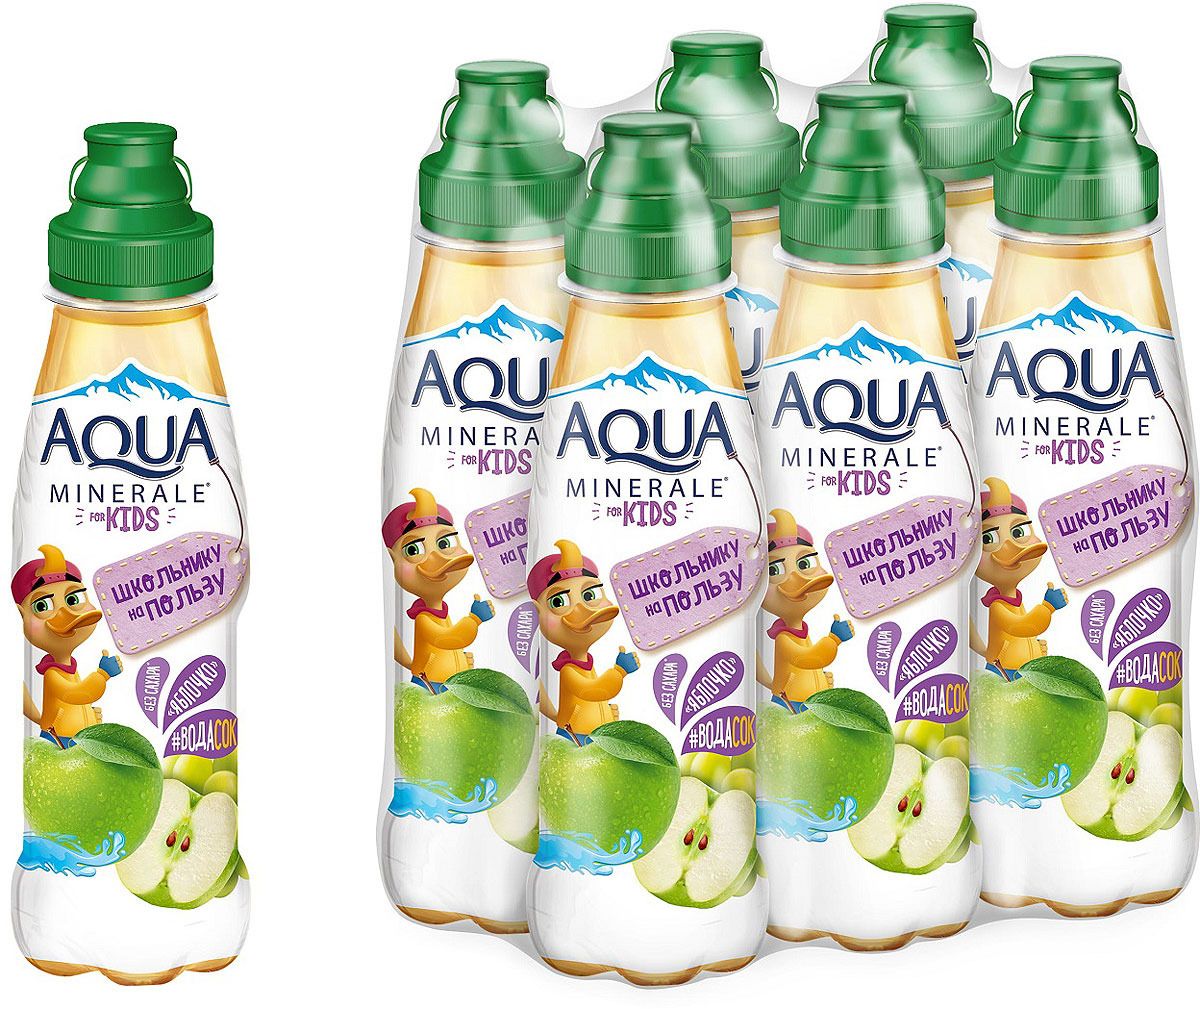   Aqua Minerale for Kids 